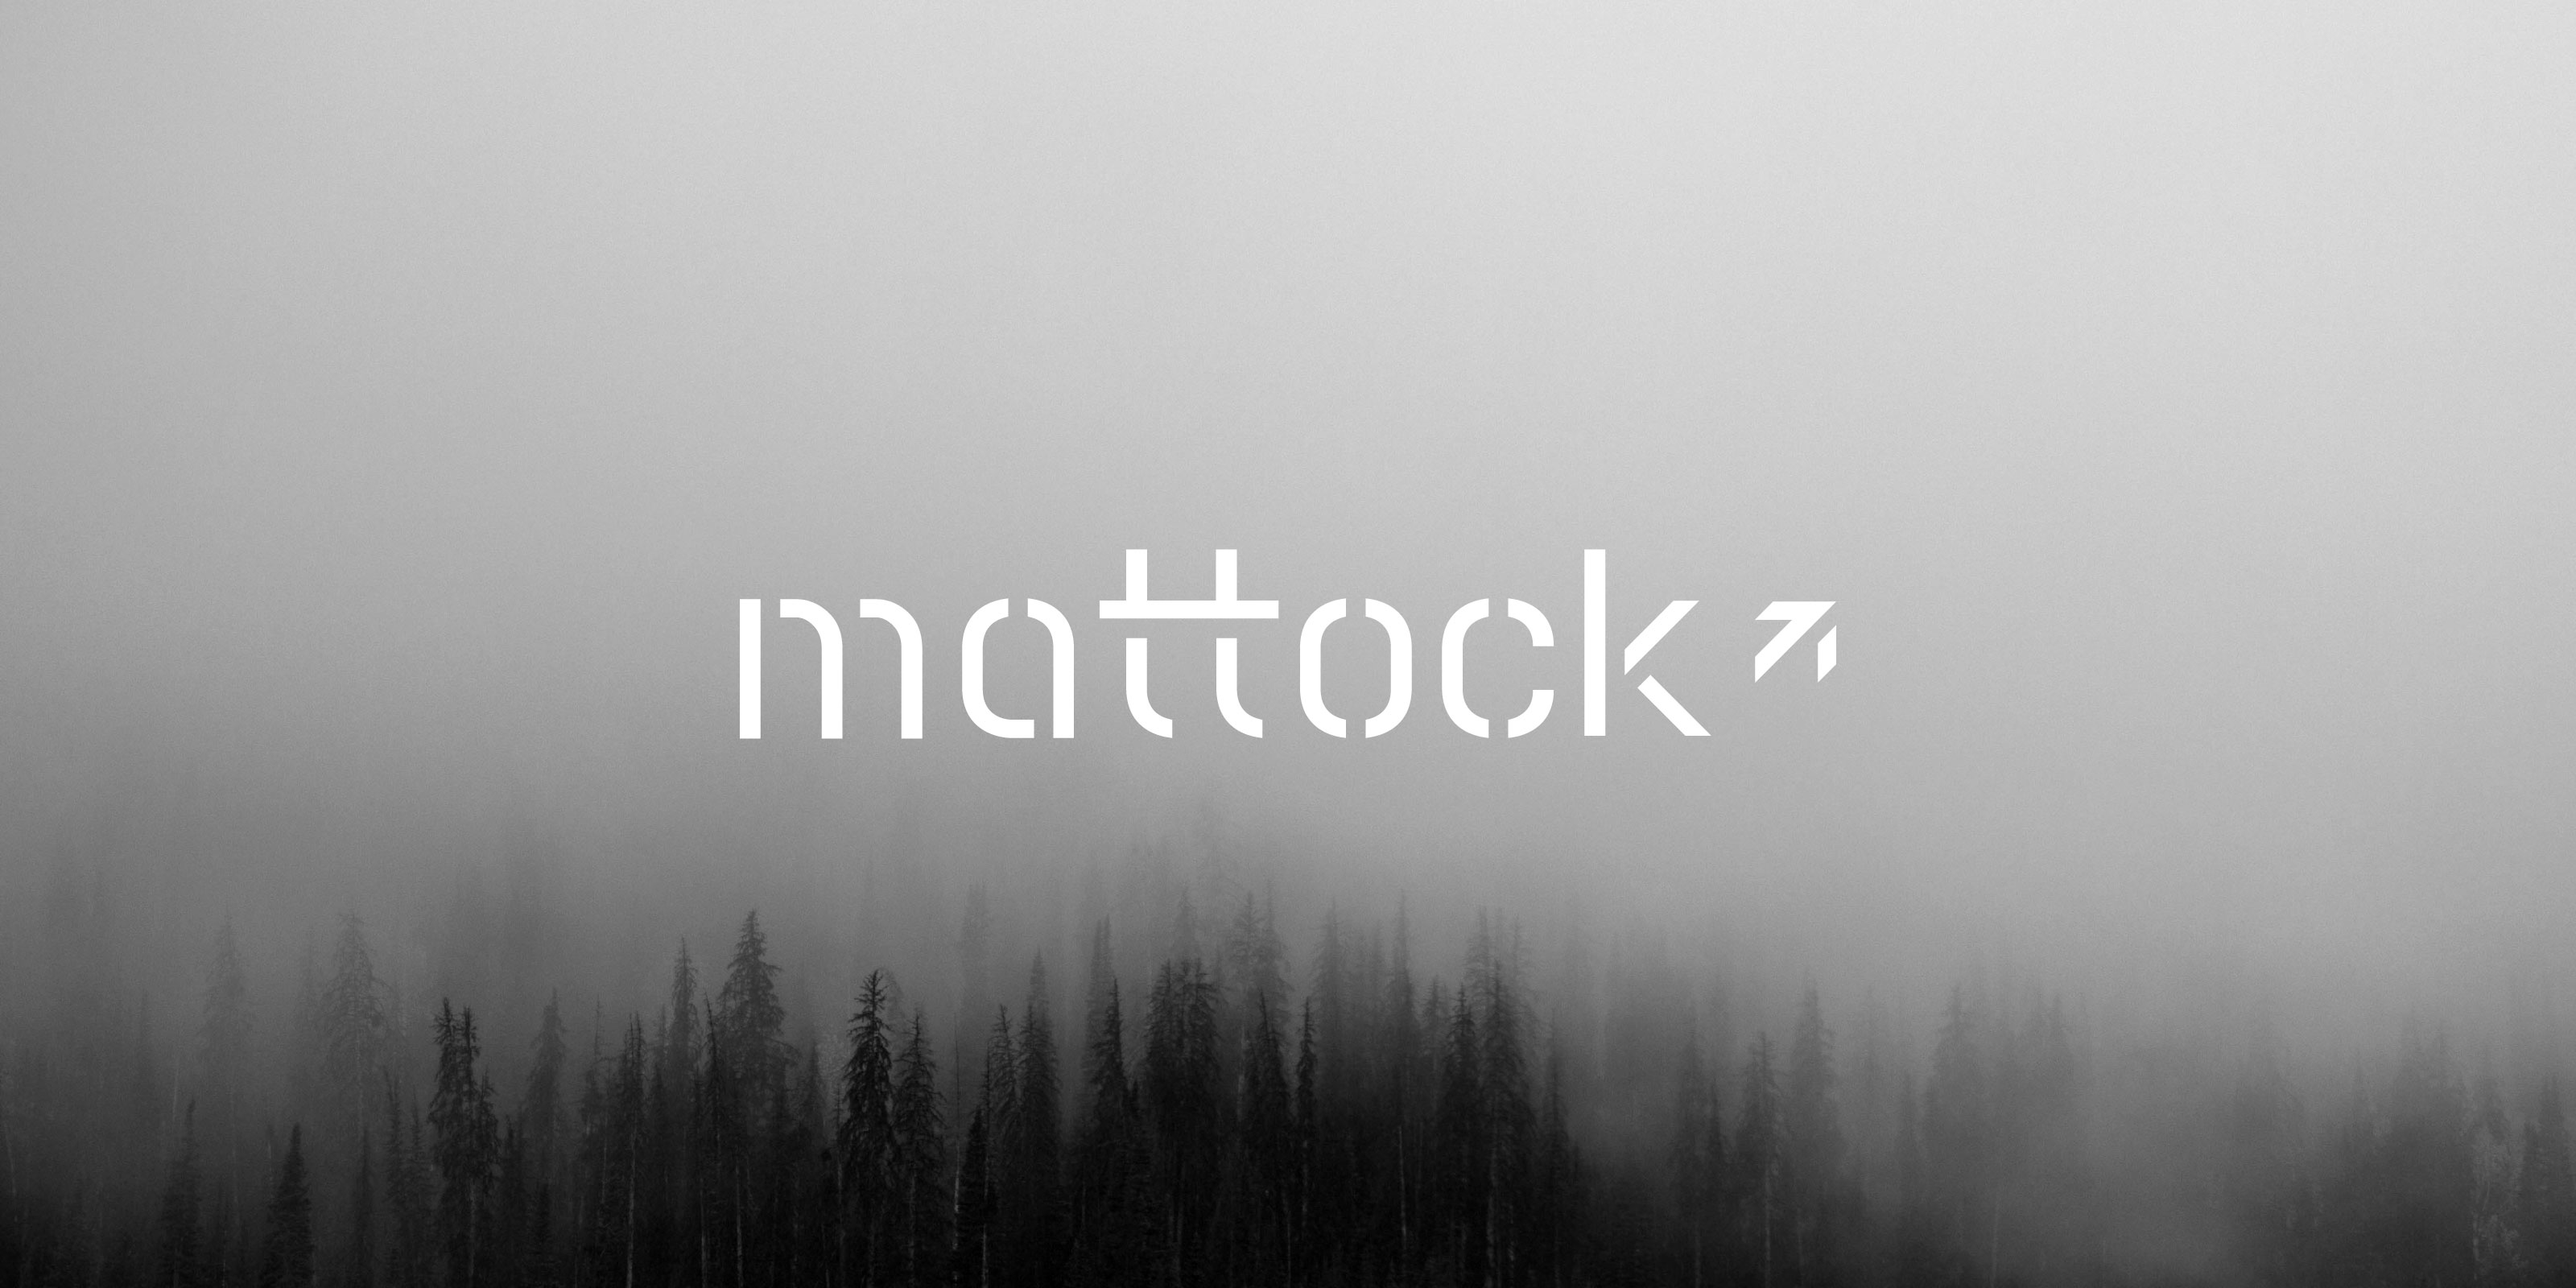 Mattock_04